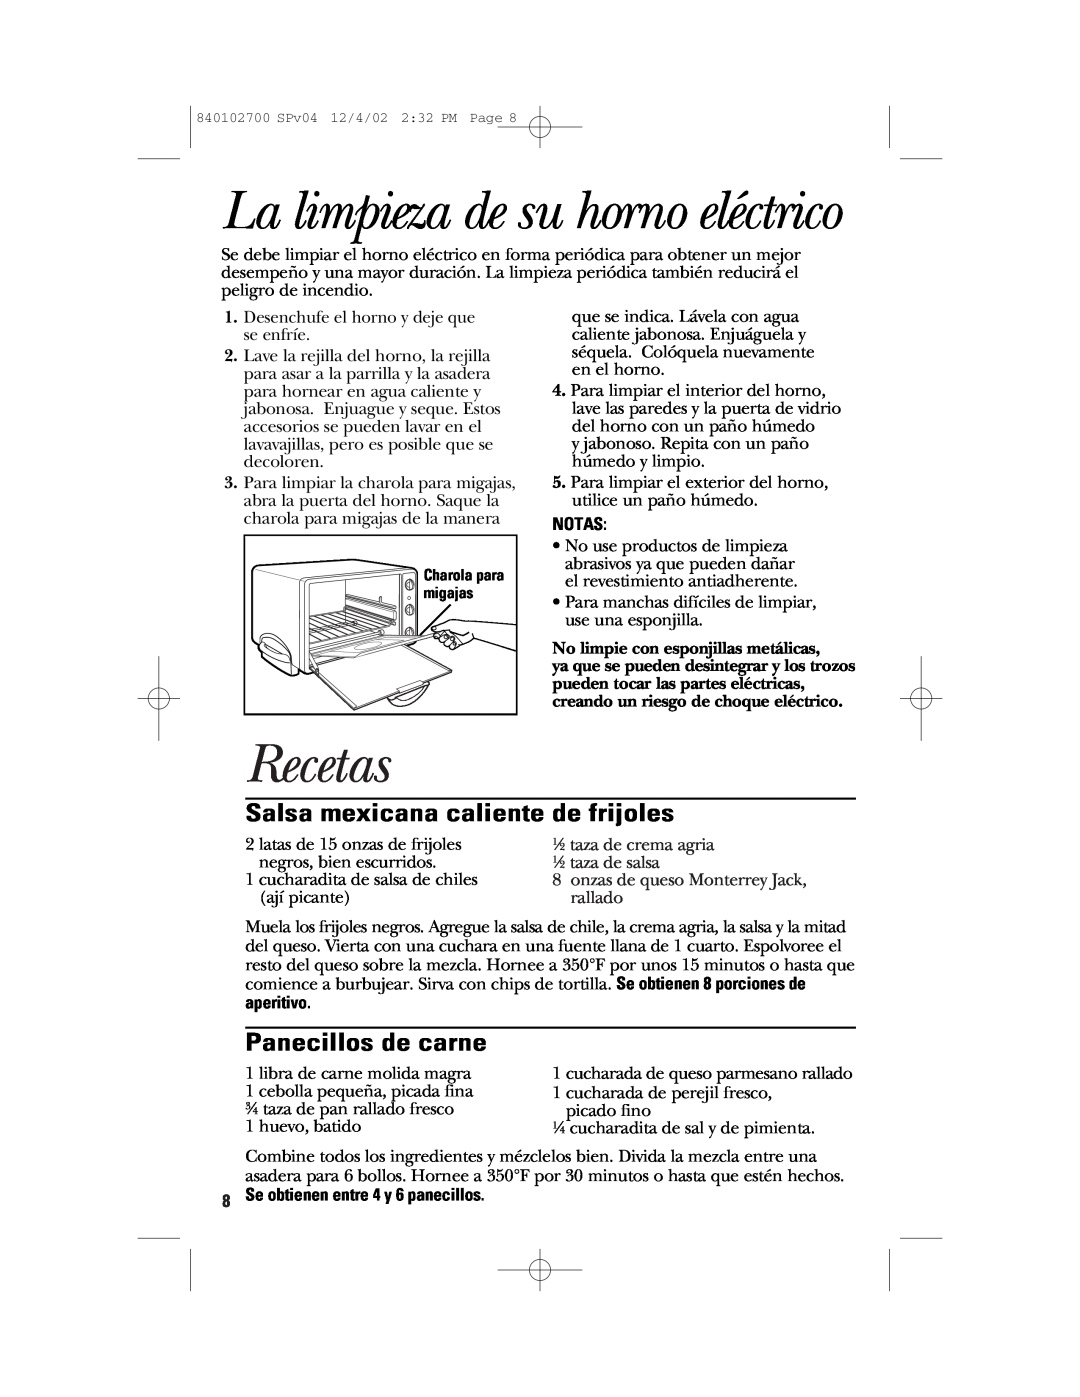 GE 840102700 La limpieza de su horno eléctrico, Recetas, Salsa mexicana caliente de frijoles, Panecillos de carne, Notas 